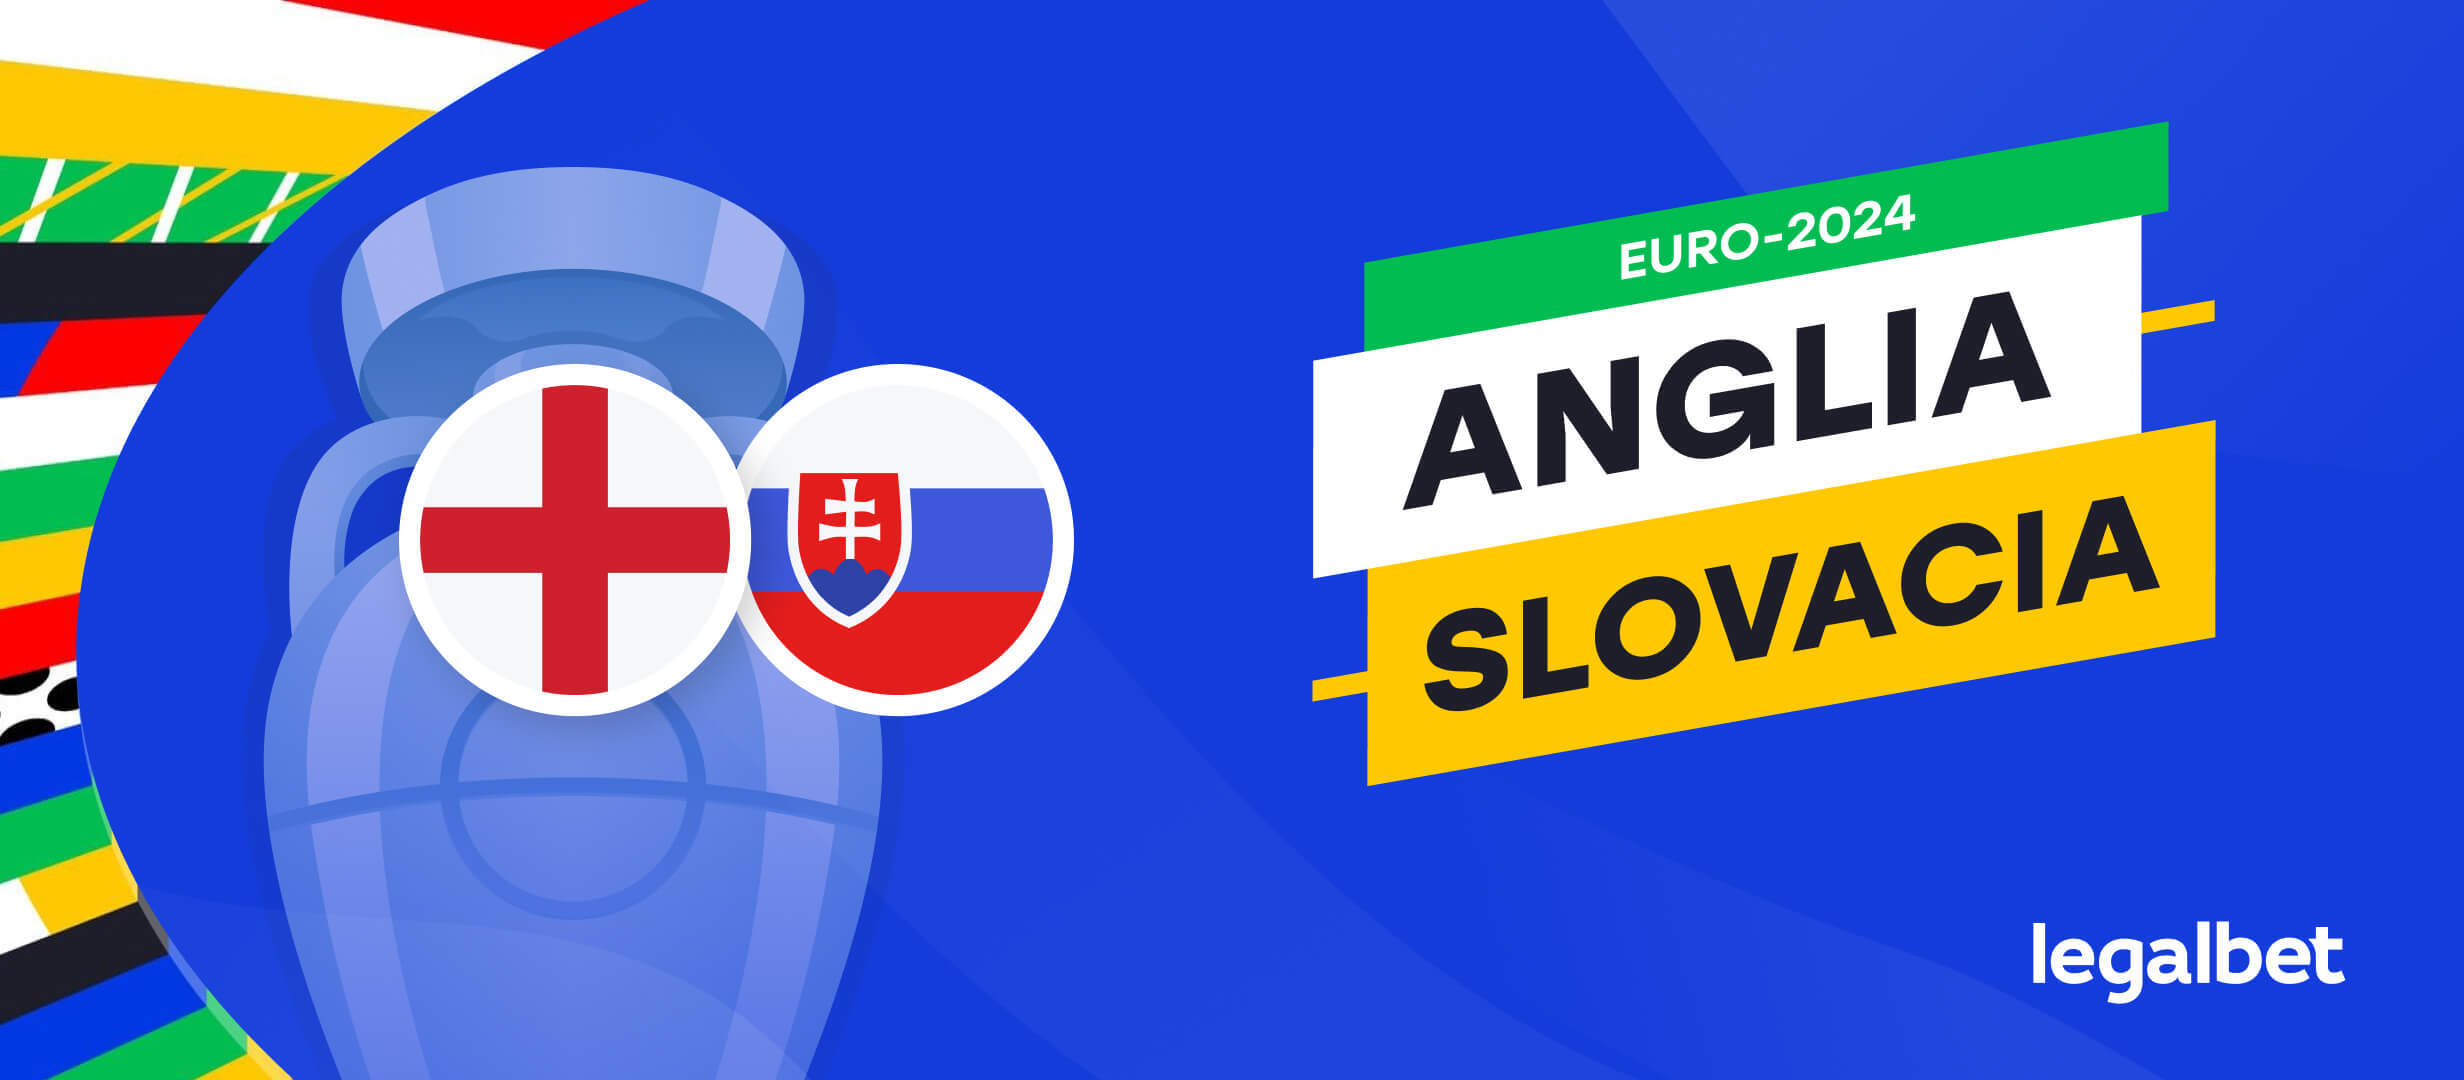 Ponturi Anglia vs Slovacia: cote pariuri EURO 2024